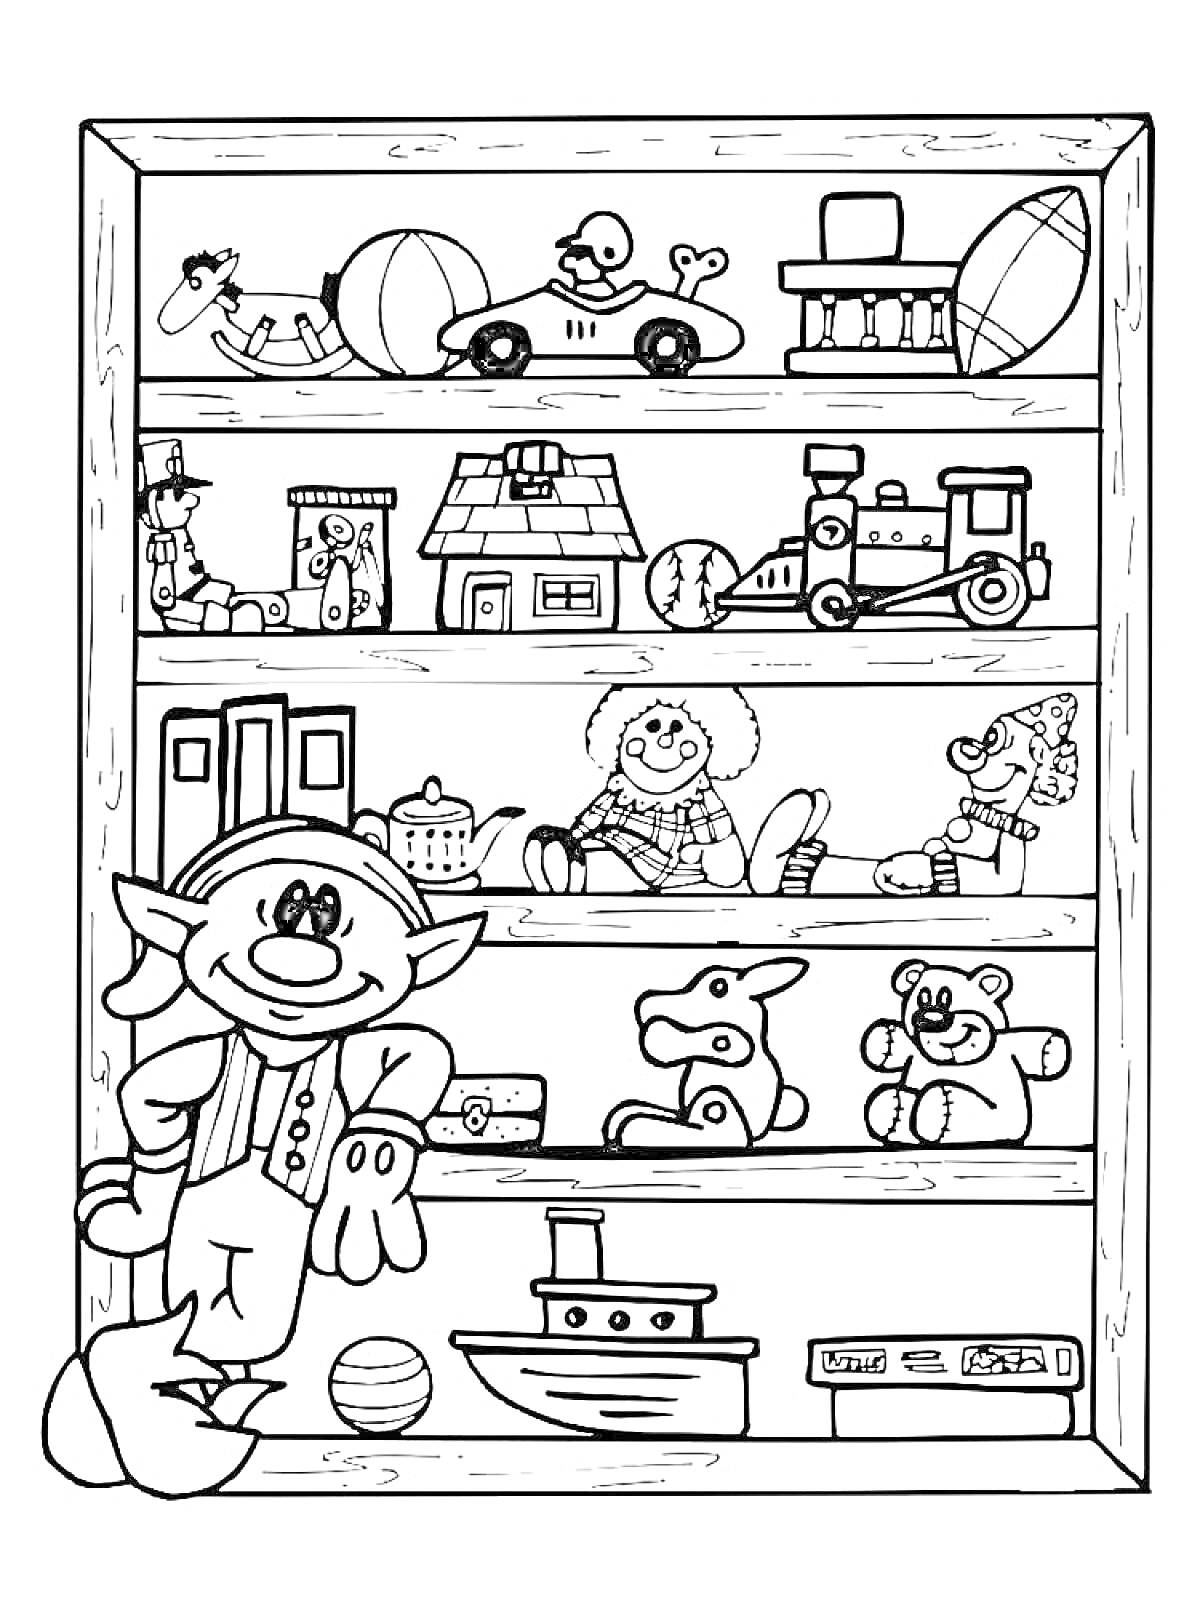 На раскраске изображено: Магазин игрушек, Полки, Игрушки, Кукла, Плюшевый медведь, Мячи, Паровоз, Авто